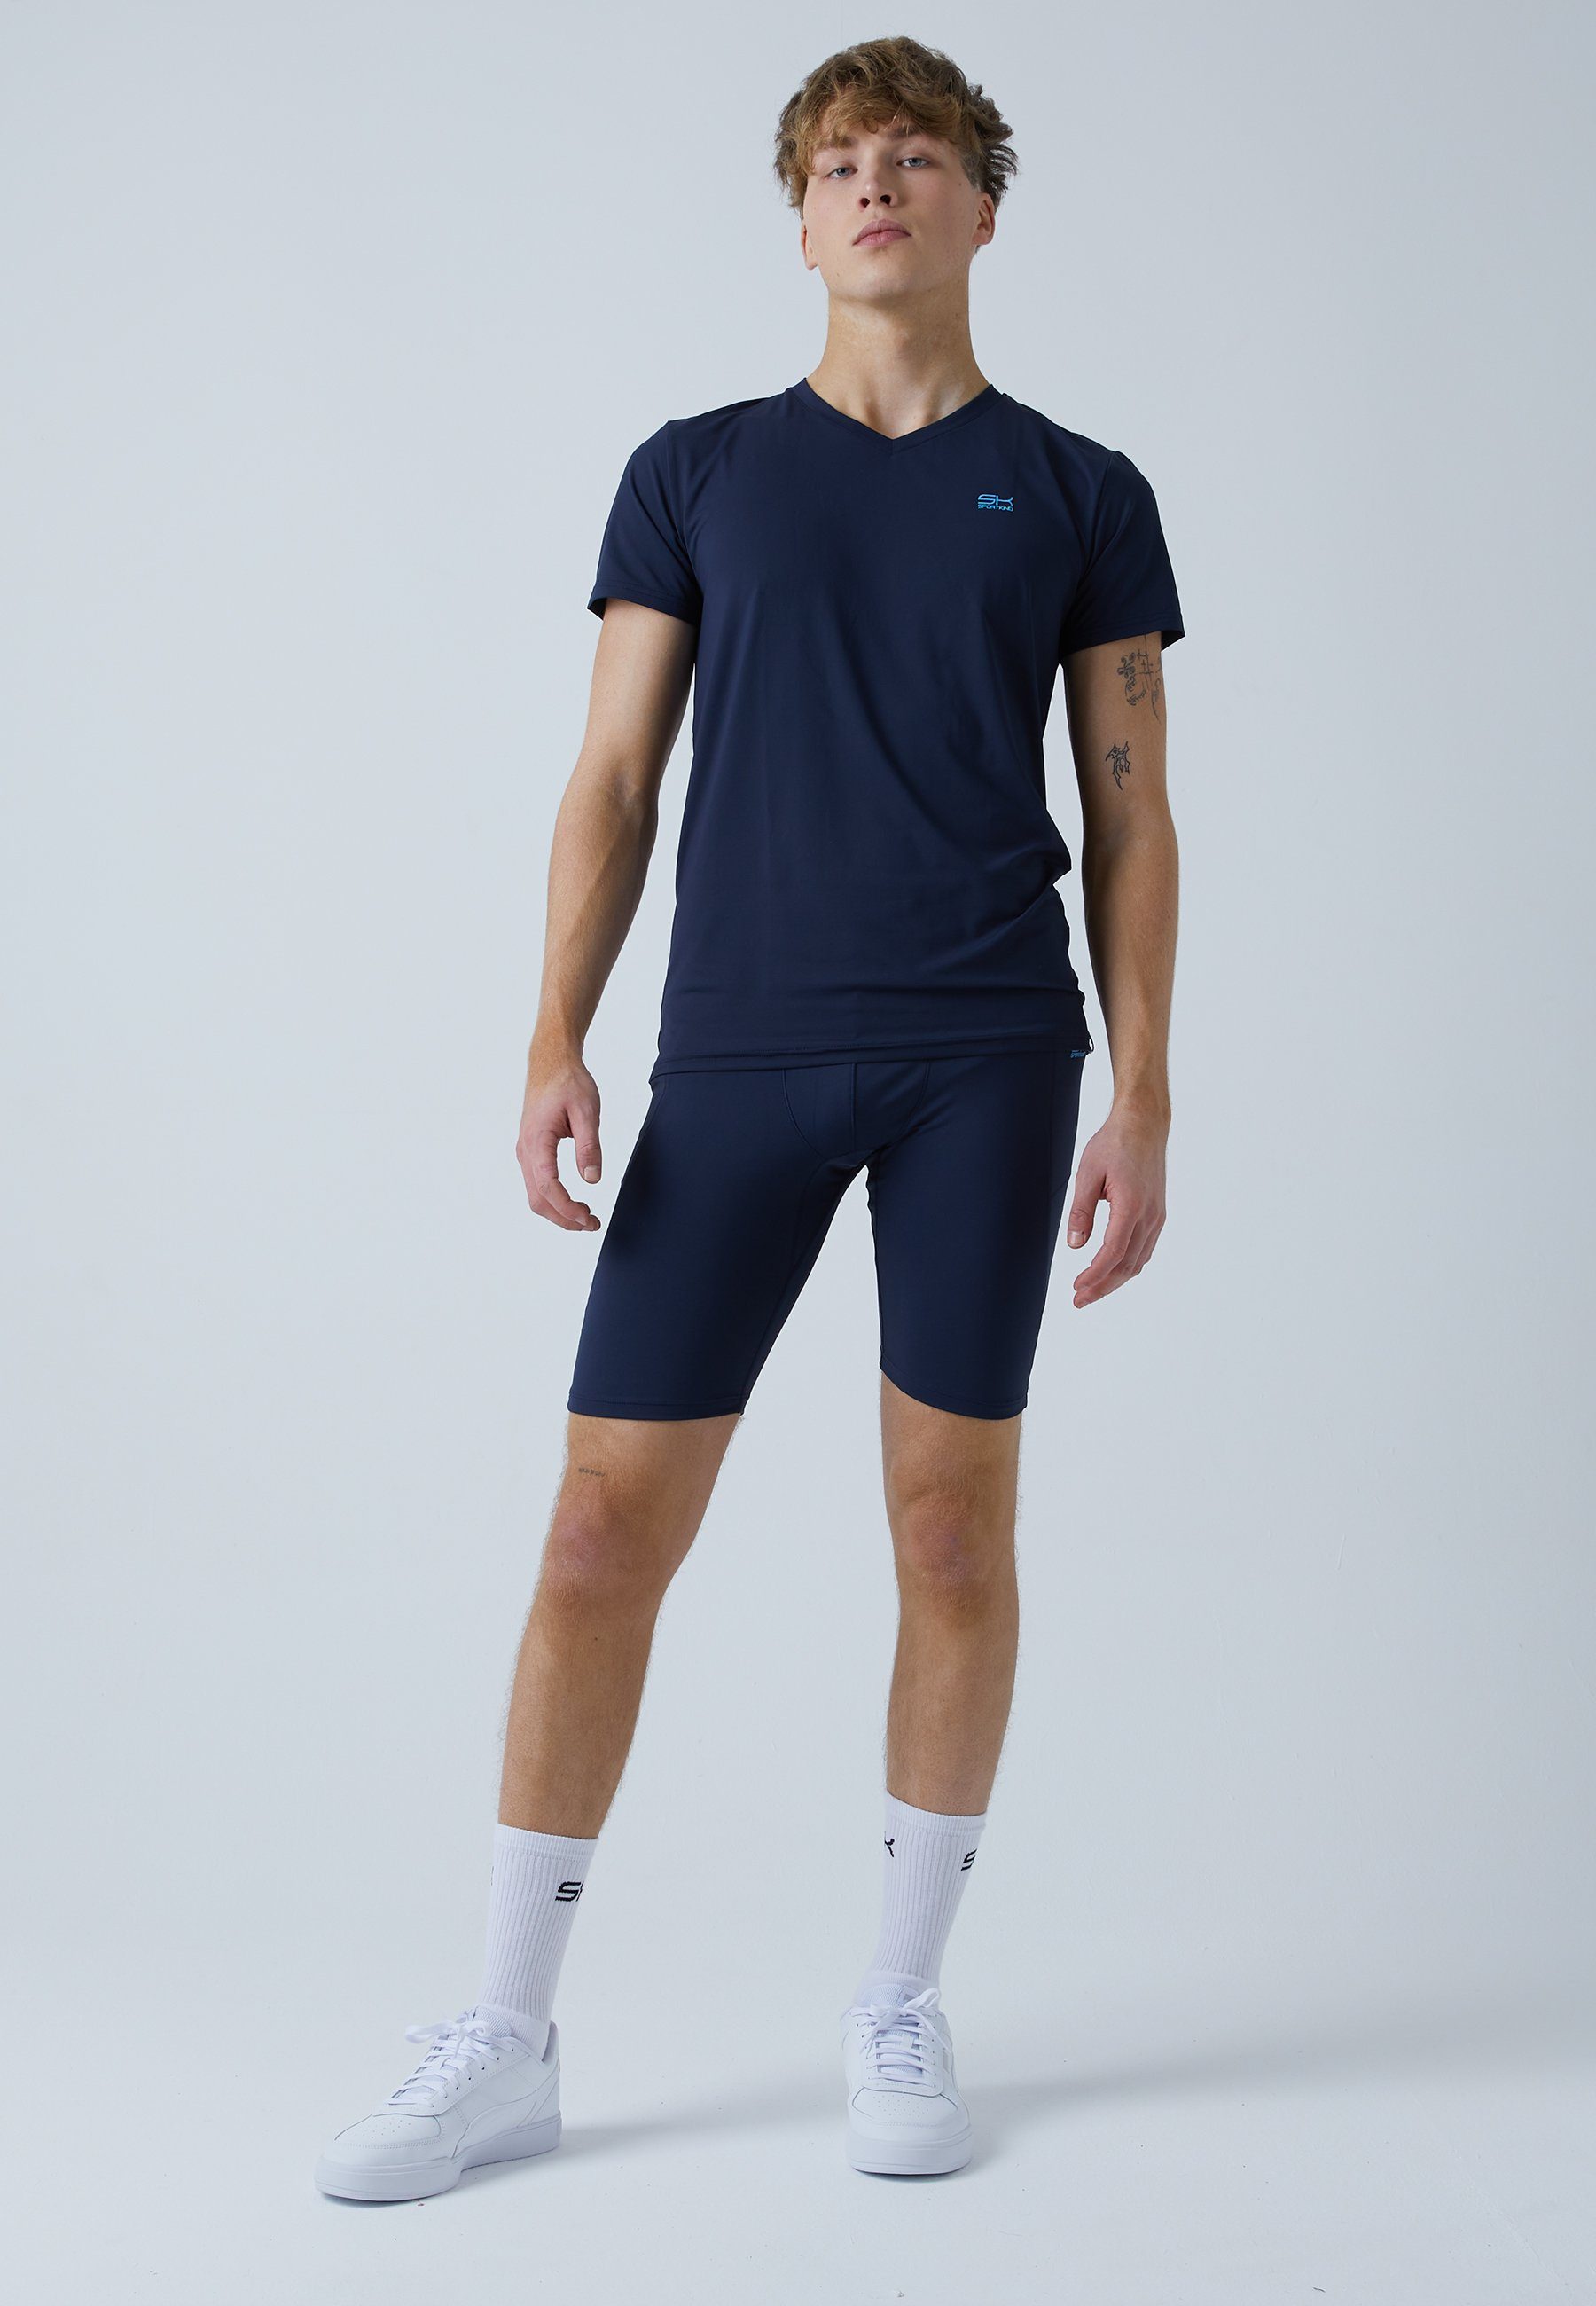 Herren Tights Short Jungen Radlerhose & navy Taschen mit Tennis blau SPORTKIND Funktionsshorts